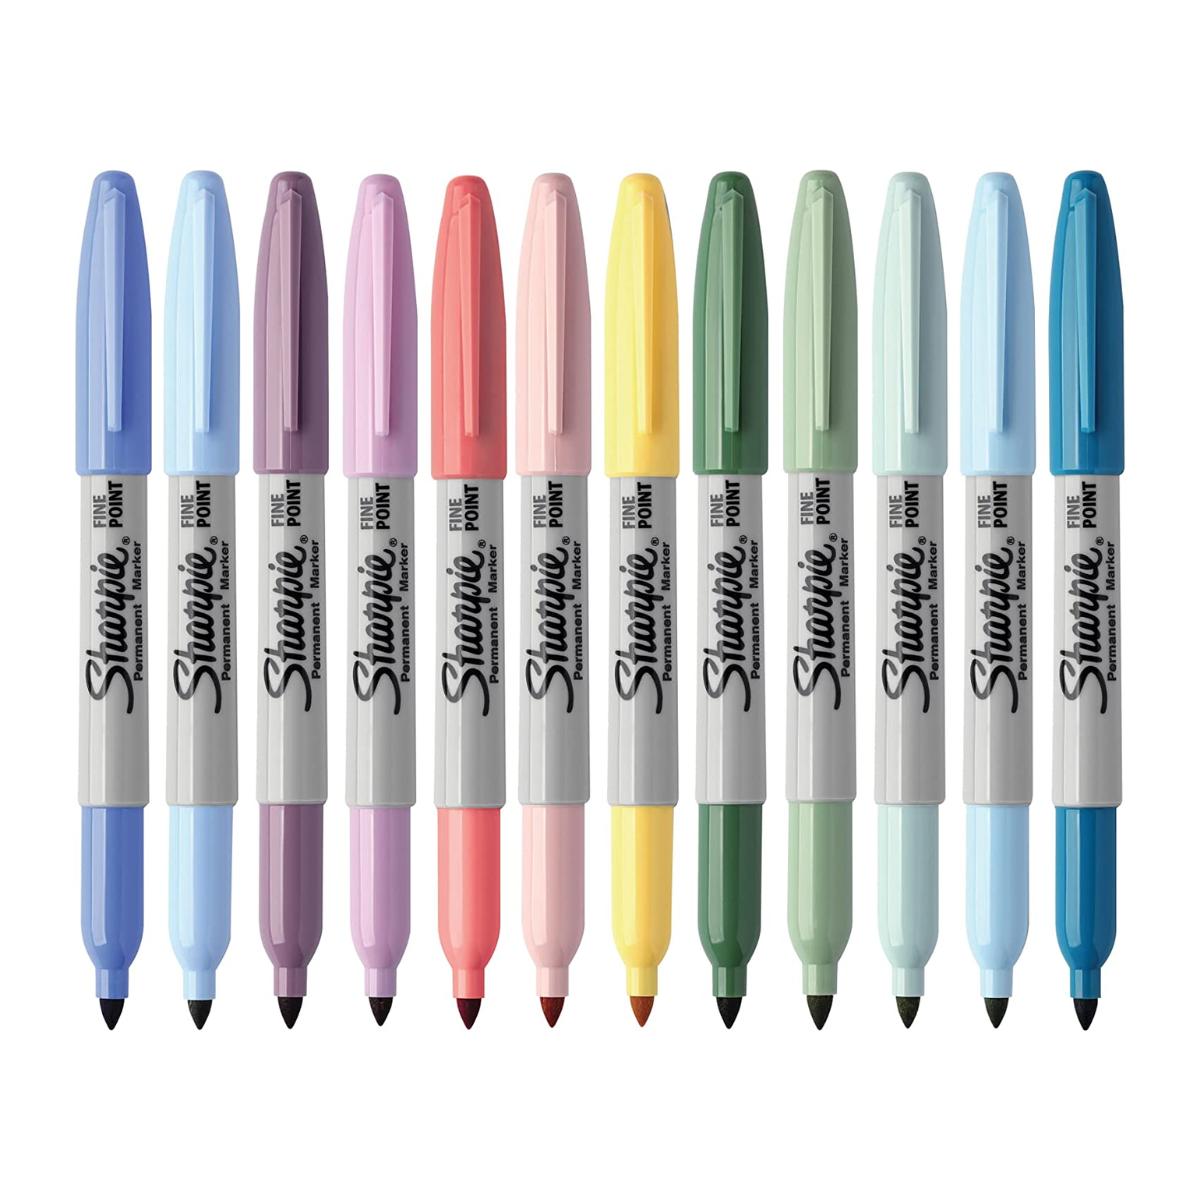  Sharpie : Marcador de pintura permanente, punta fina, blanco  -:- Se vende como 1 EA : Arte y Manualidades